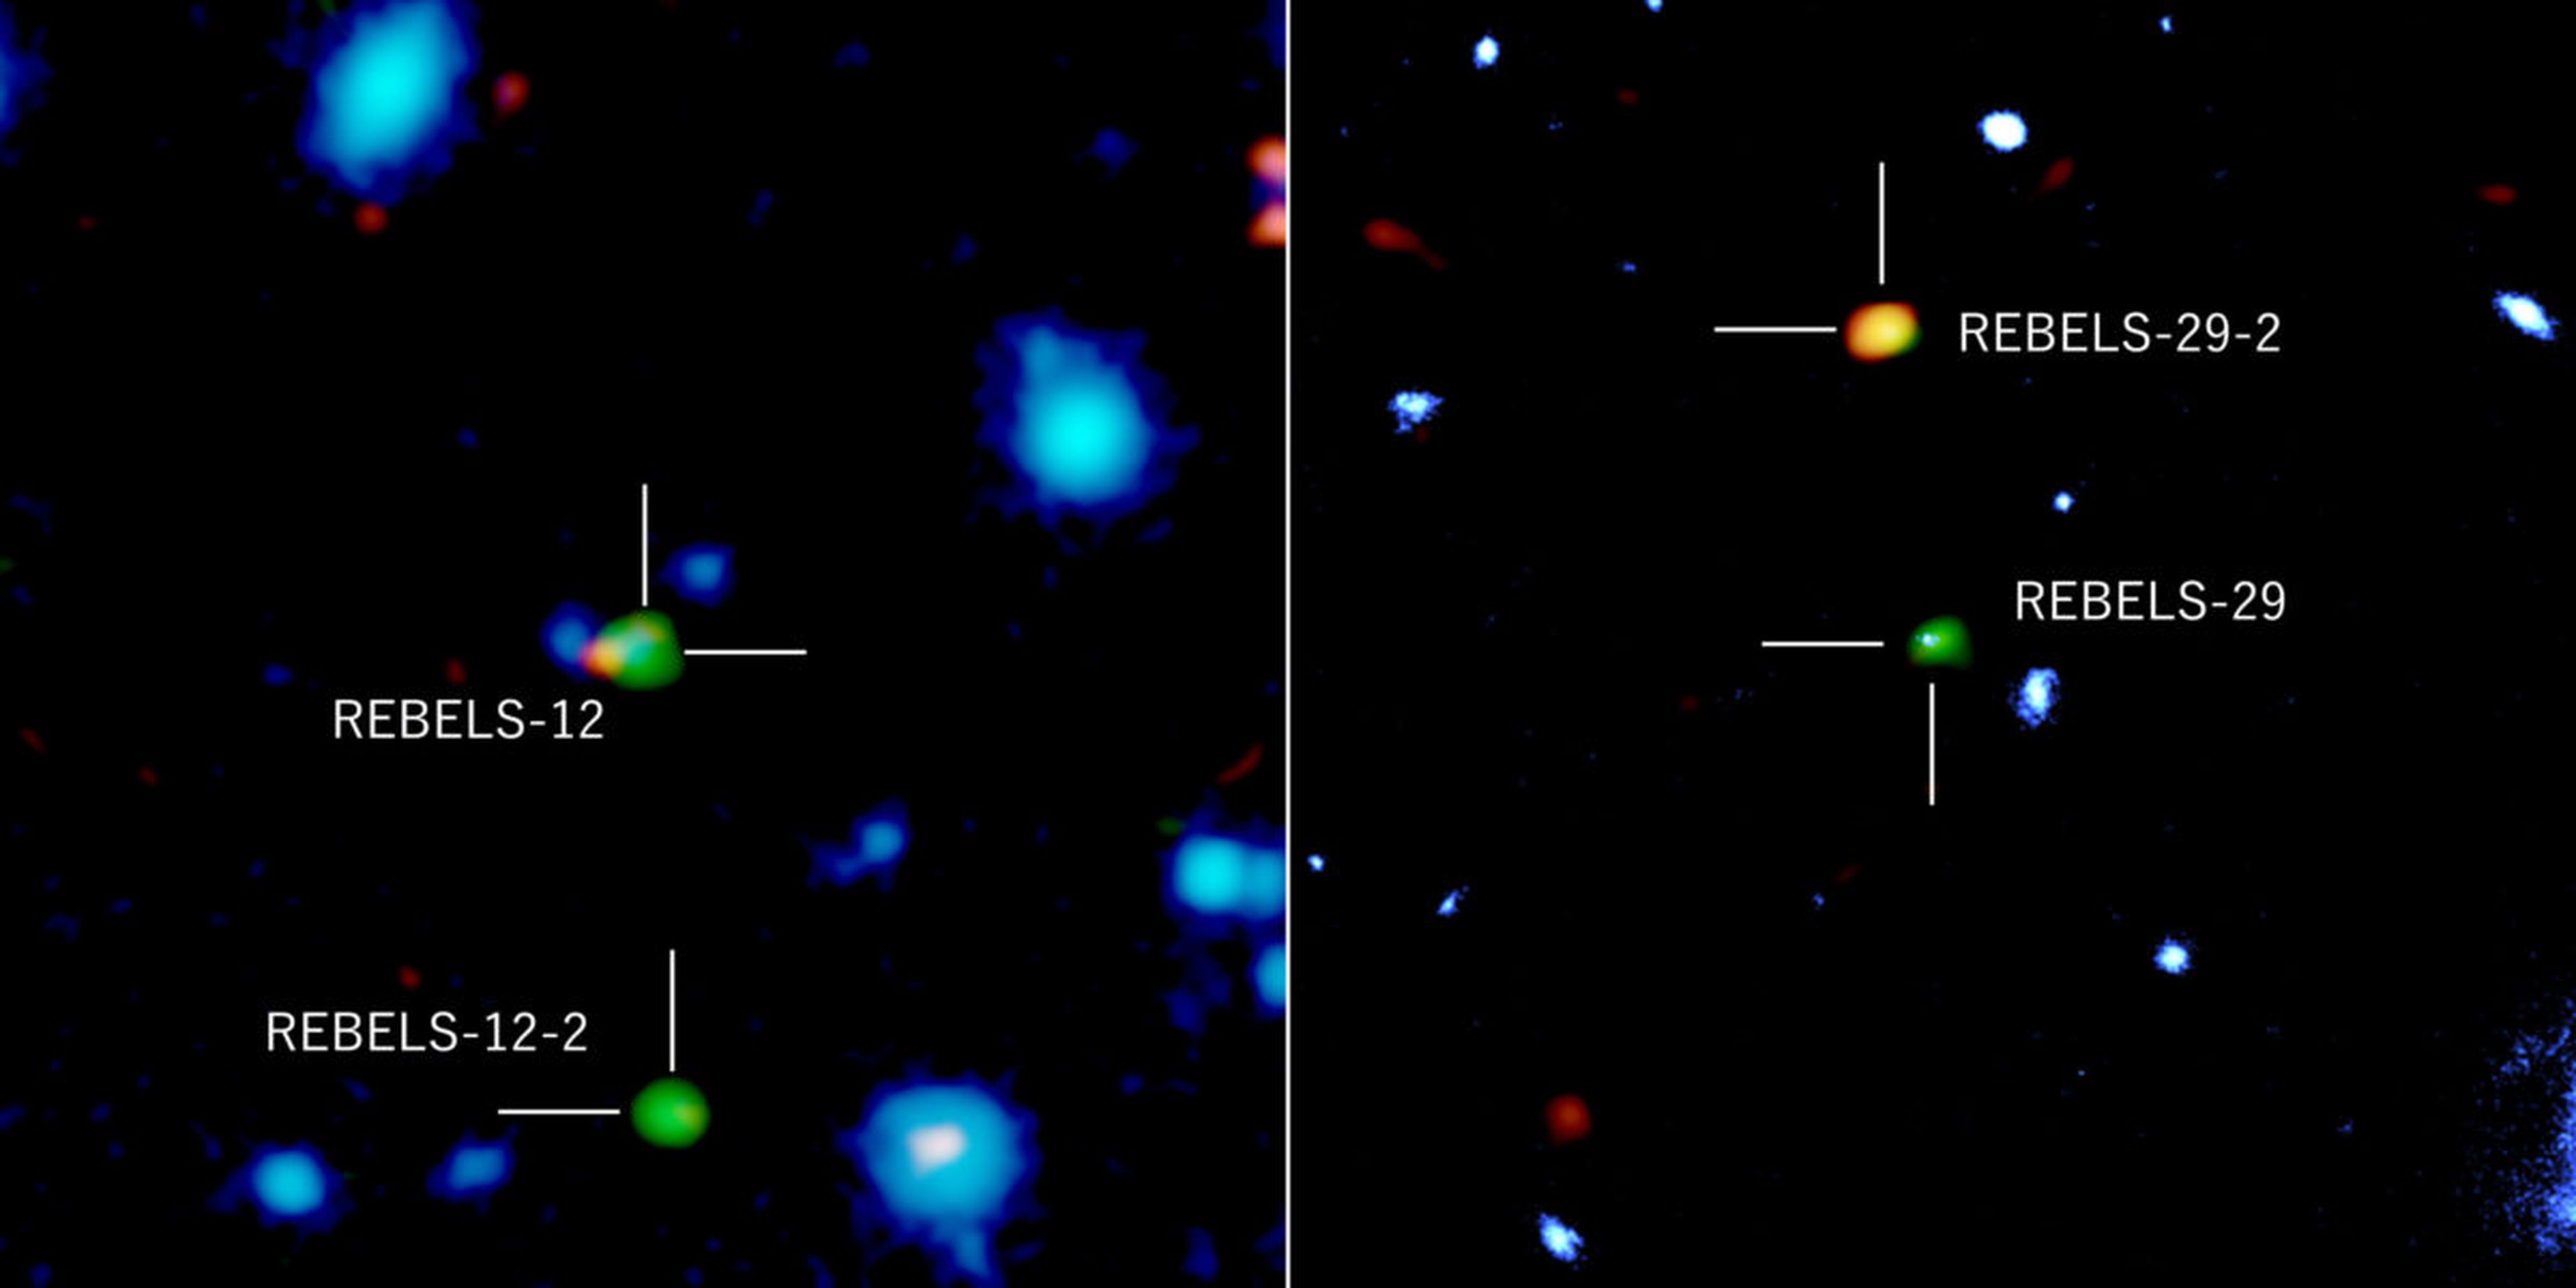 Las 2 galaxias descubiertas: en verde y naranja, radiaciones de átomos de carbono ionizados y polvo, respectivamente; en azul, la radicación de infrarrojo cercano.